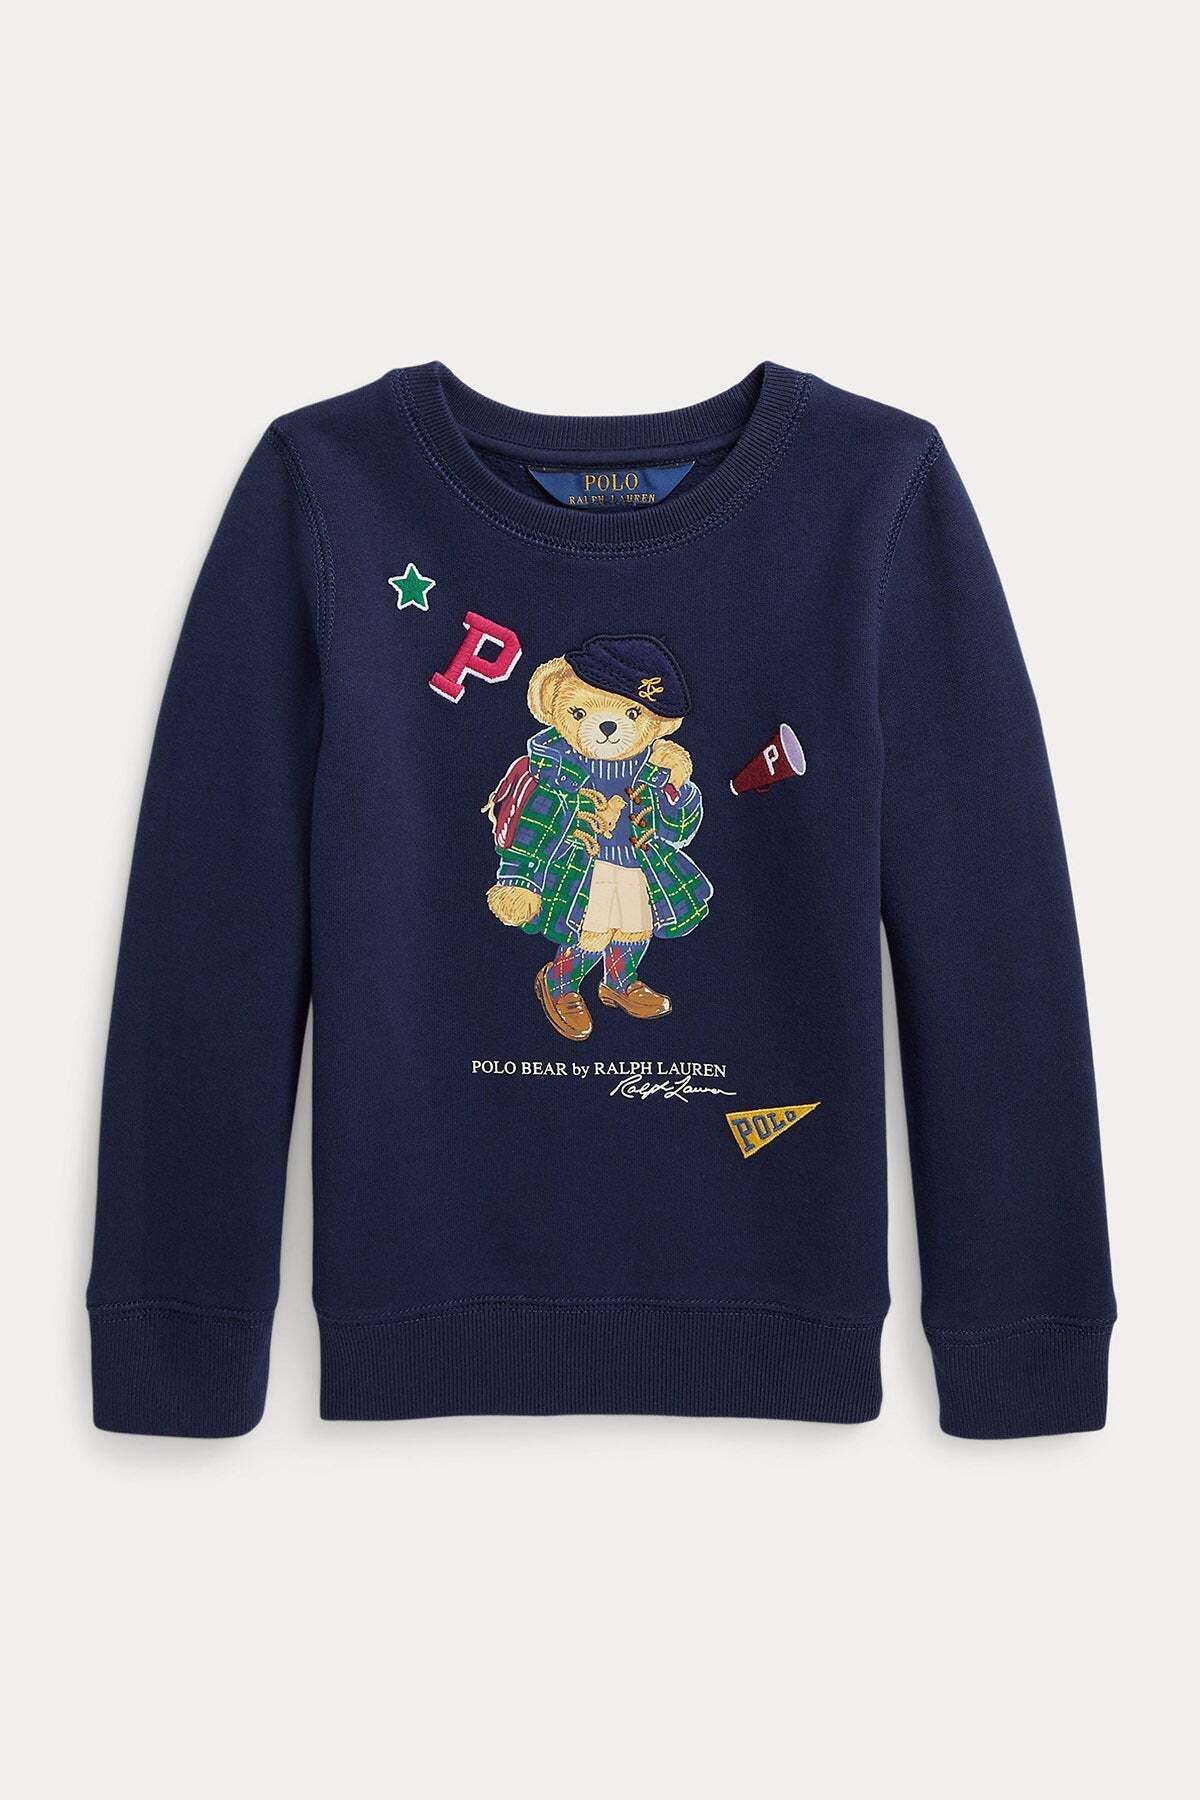 Ralph Lauren 2-5 Yaş Kız Çocuk Polo Bear Sweatshirt 2y / Lacivert